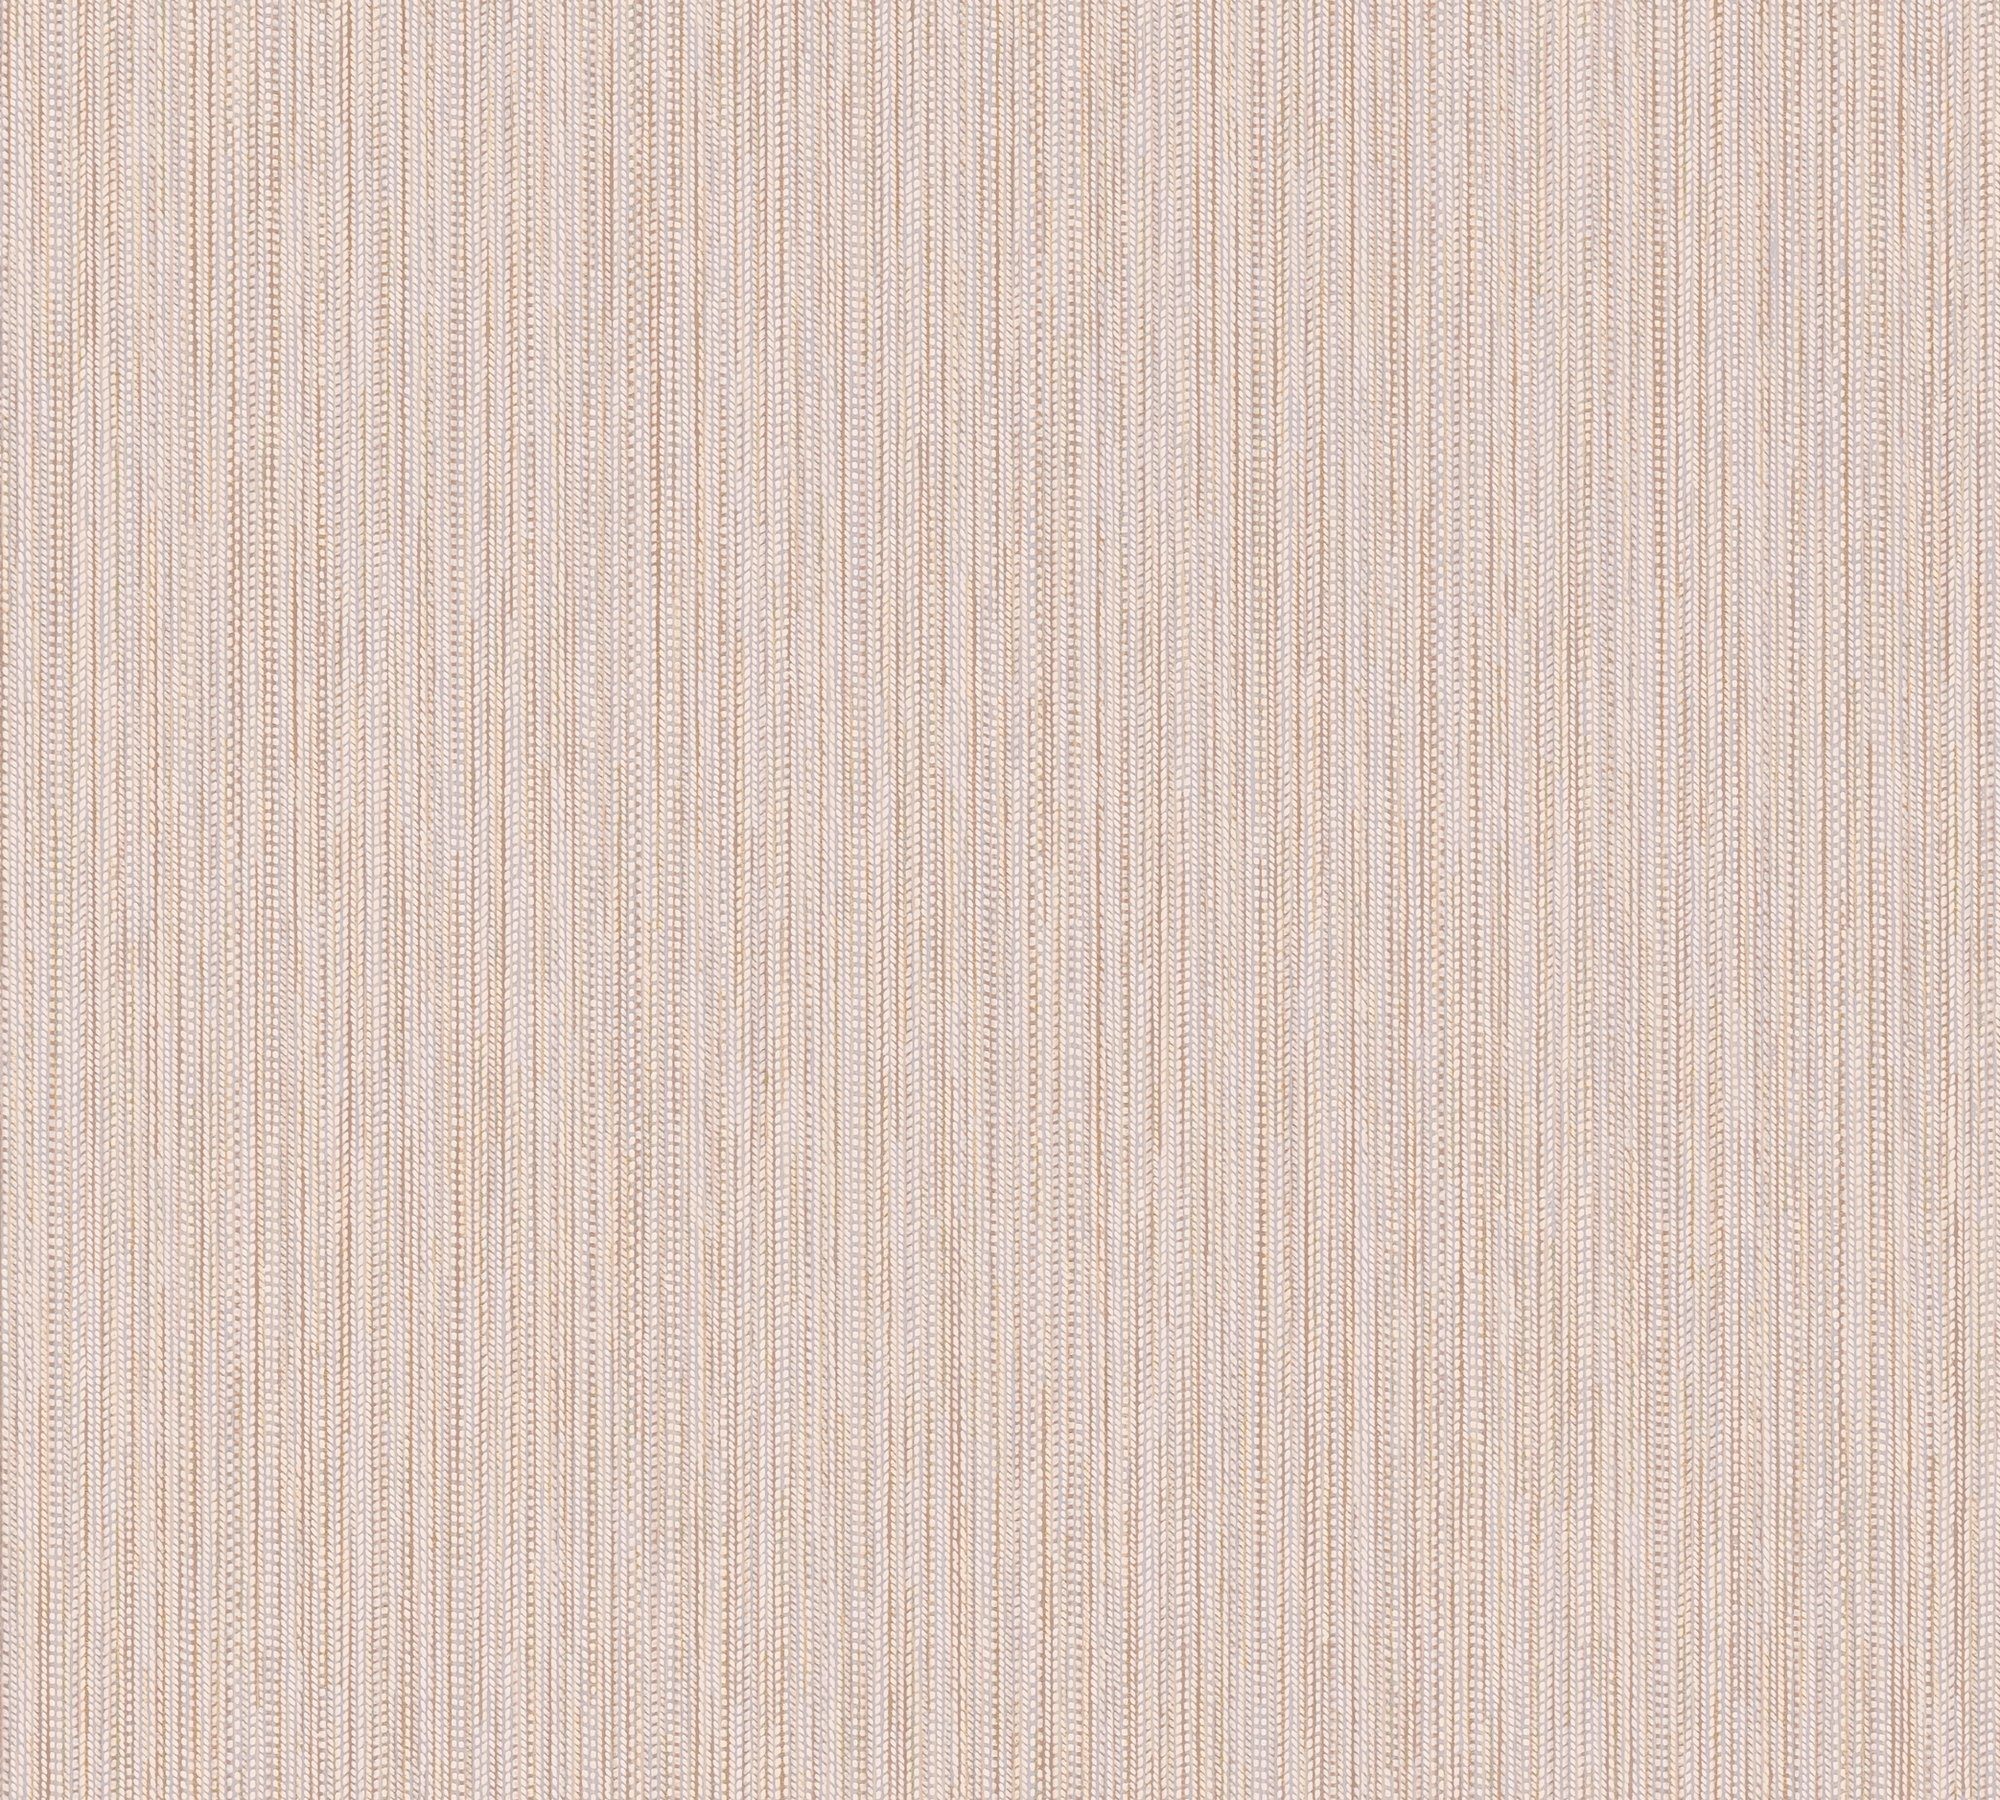 A.S. Tapete Streifen, Streifentapete (1 Attractive mit Hellgrau strukturiert strukturiert, St), 2 Weiß glänzend, leicht Création Rosa,Grau,Braun Vliestapete